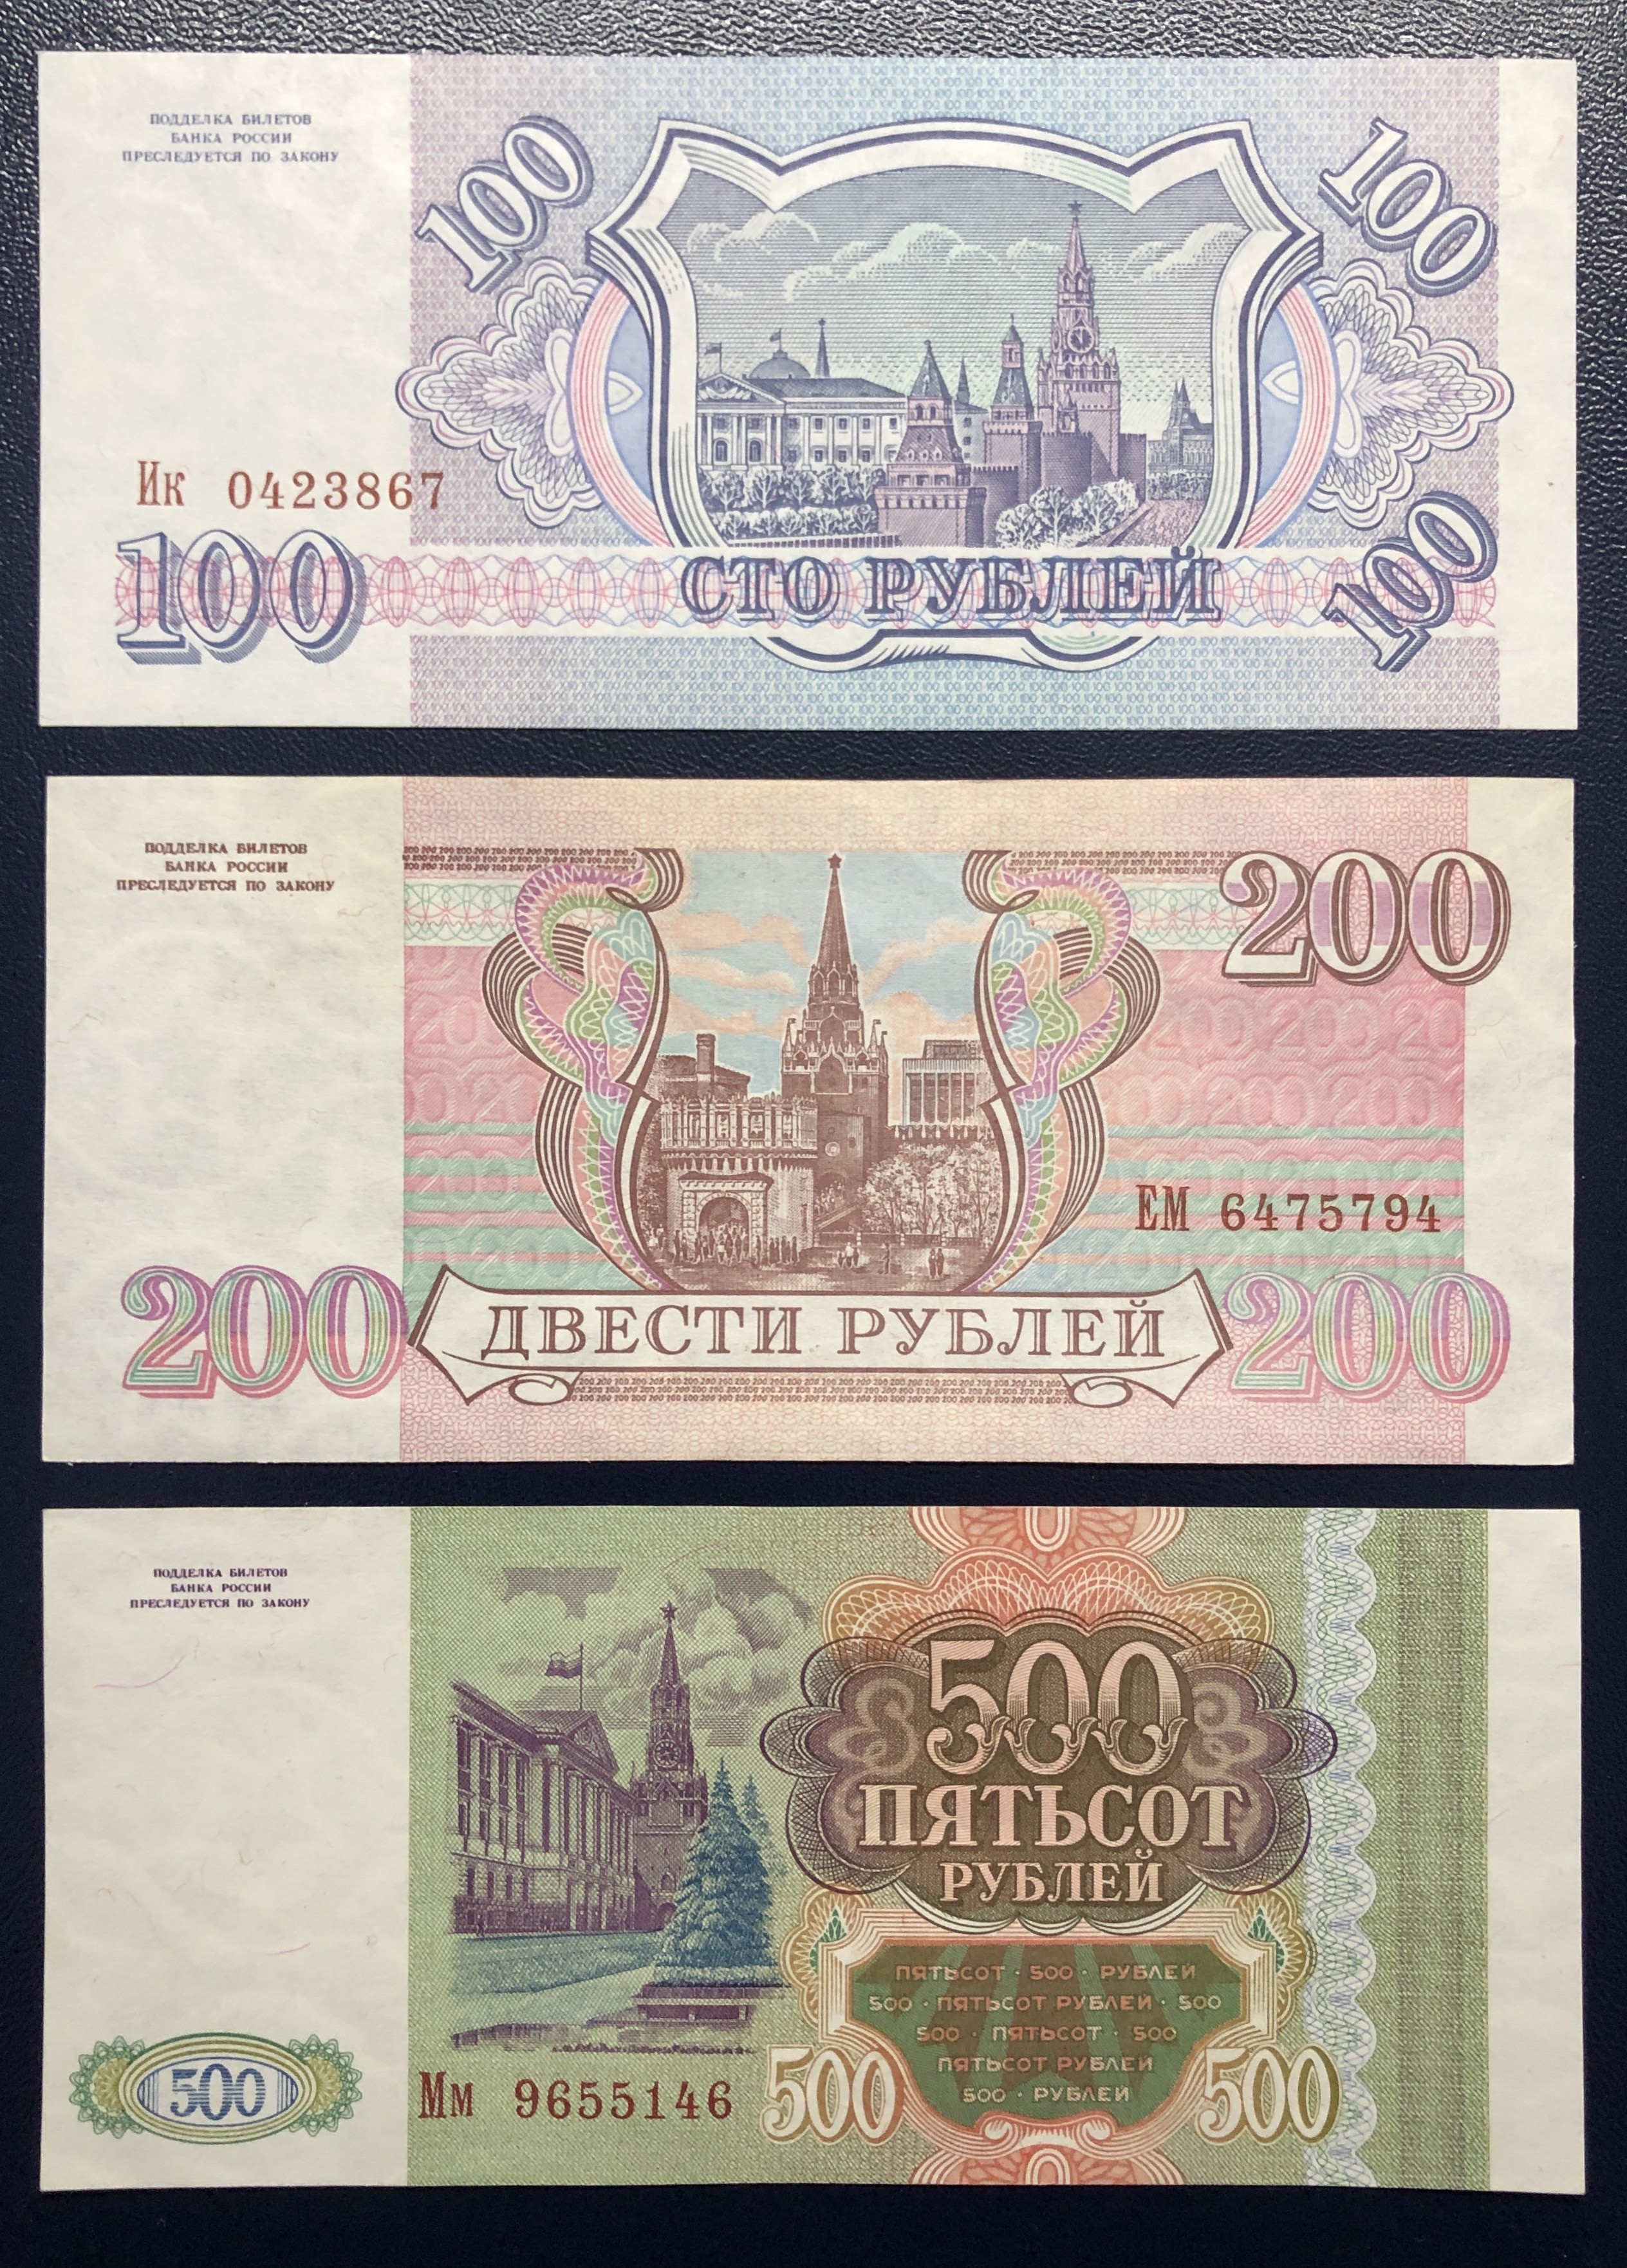 Пятьсот пять рублей. 500 Рублей 1993 UNC. 100 200 500 Рублей 1993 года. 200р 1993 года. 500 Рублей 1993 года бумажные.